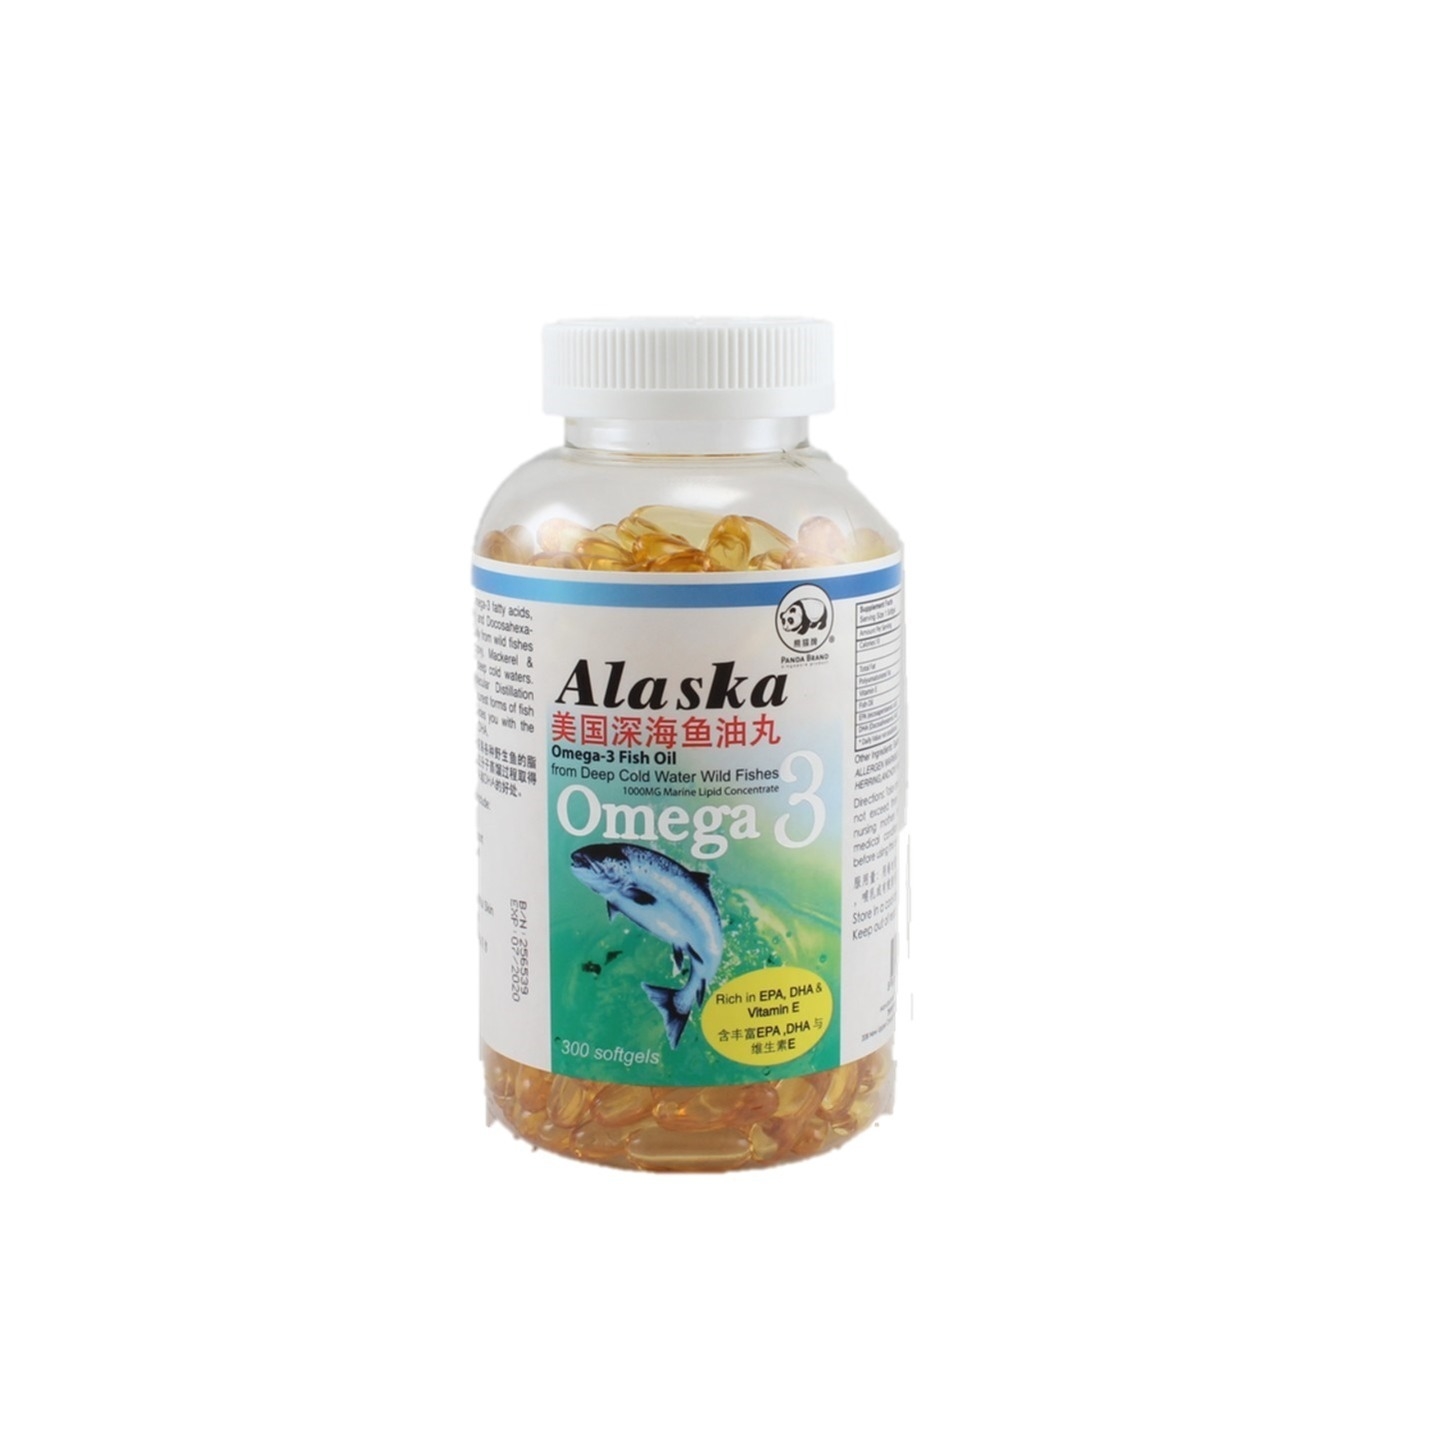 Alaska Omega-3 Fish Oil  300 Softgels 美国深海鱼油丸 PROMOTION FOR 2